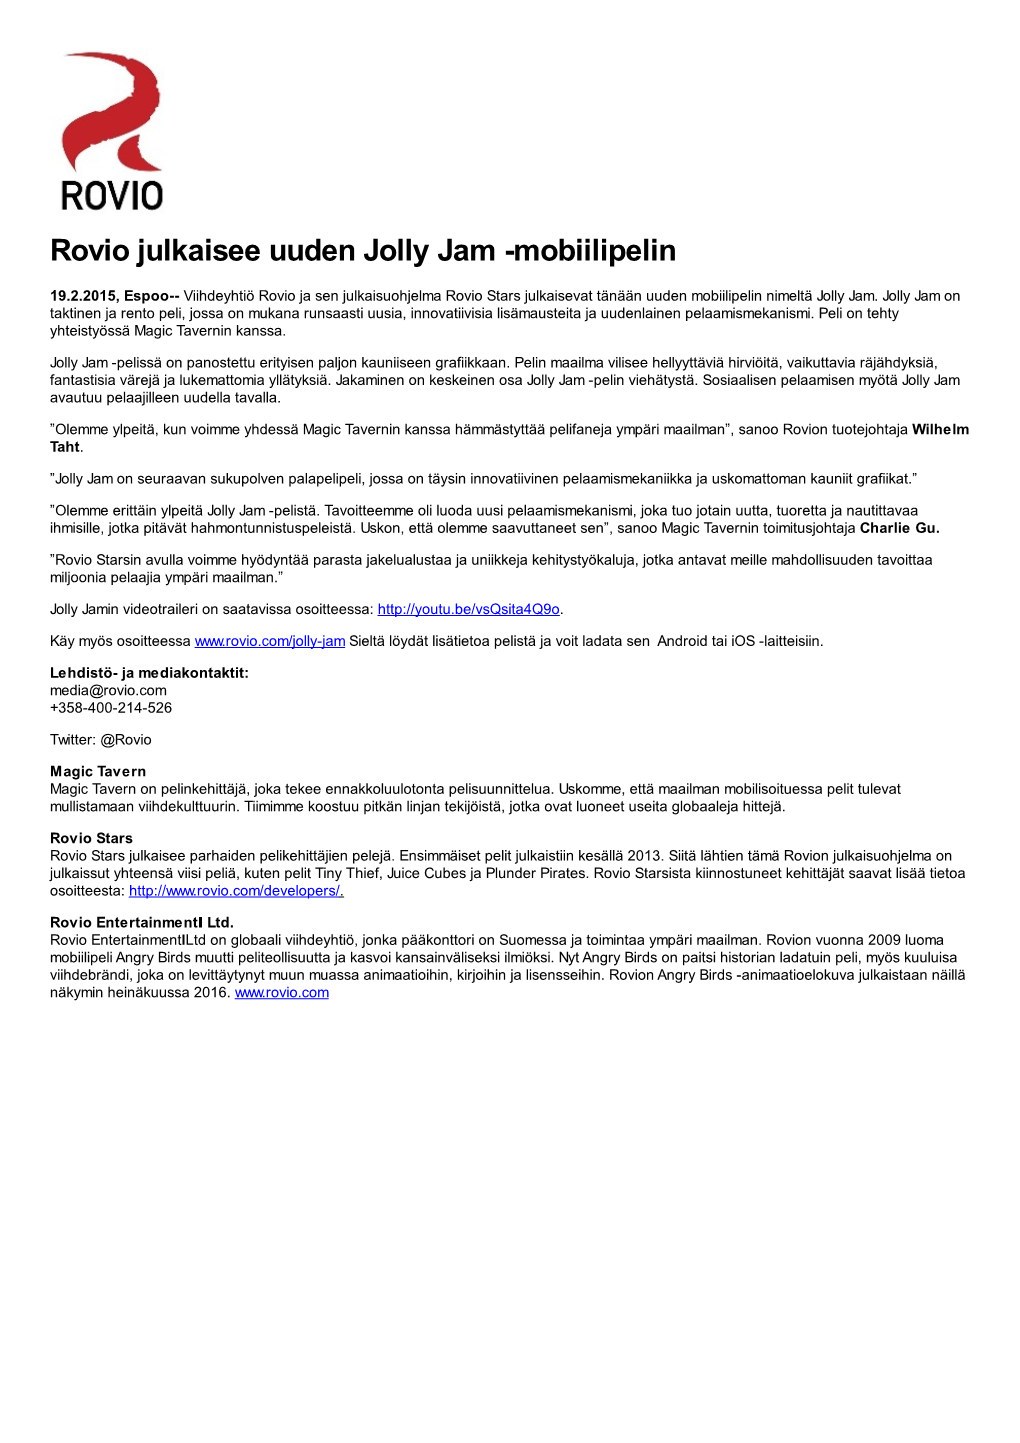 Rovio Julkaisee Uuden Jolly Jam -Mobiilipelin